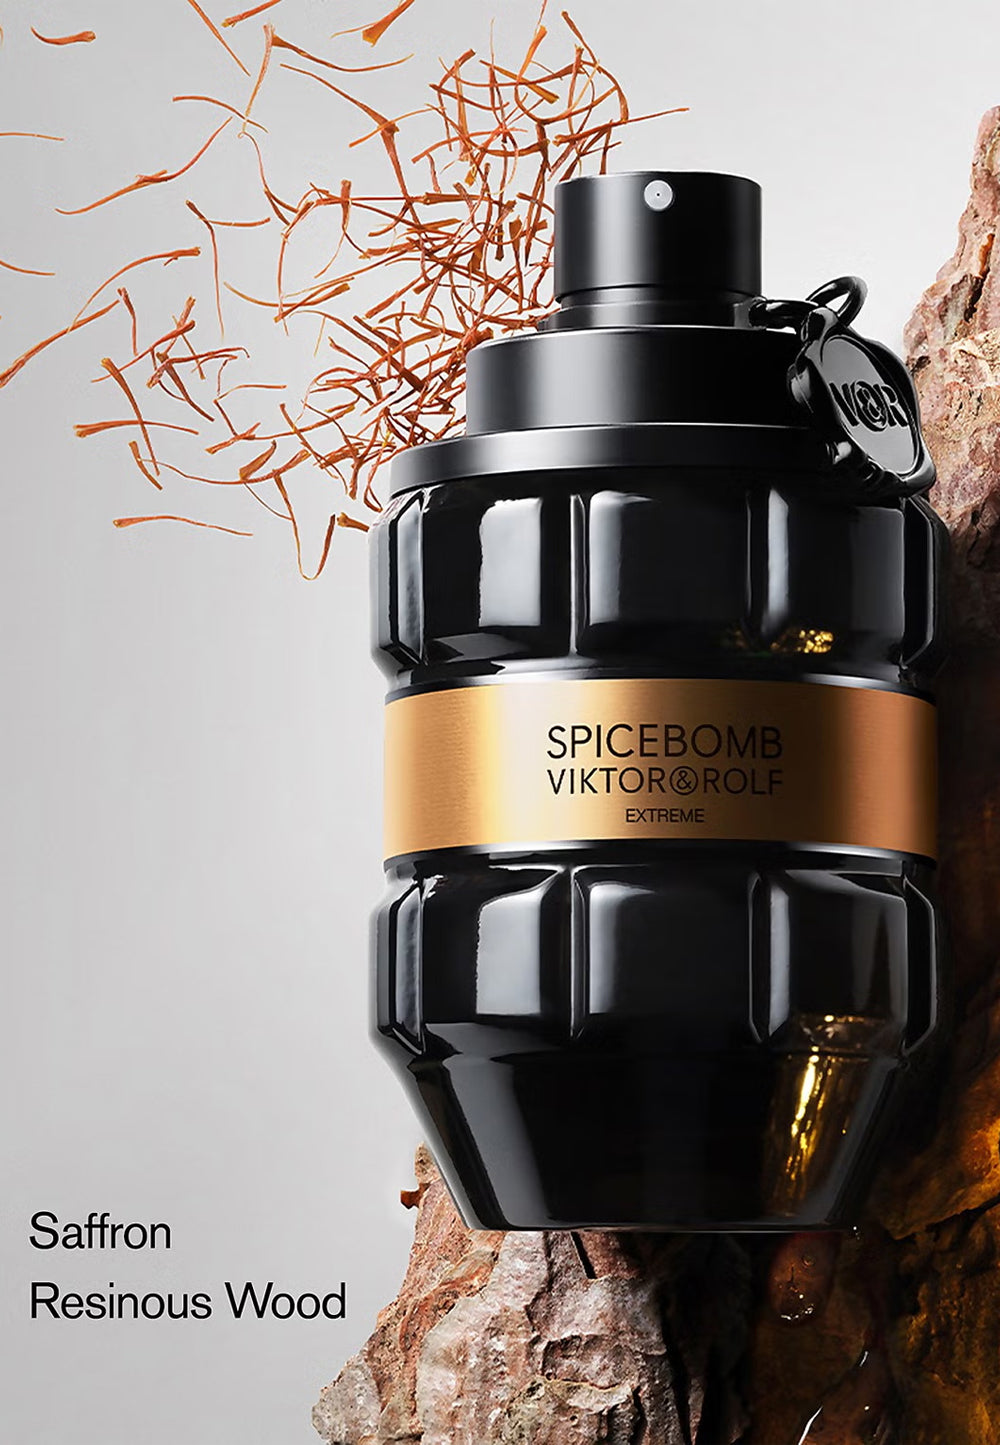 VIKTOR & ROLF Spicebomb Extreme Eau de Parfum Spray - 90ml - MAISONDEFASHION.COM